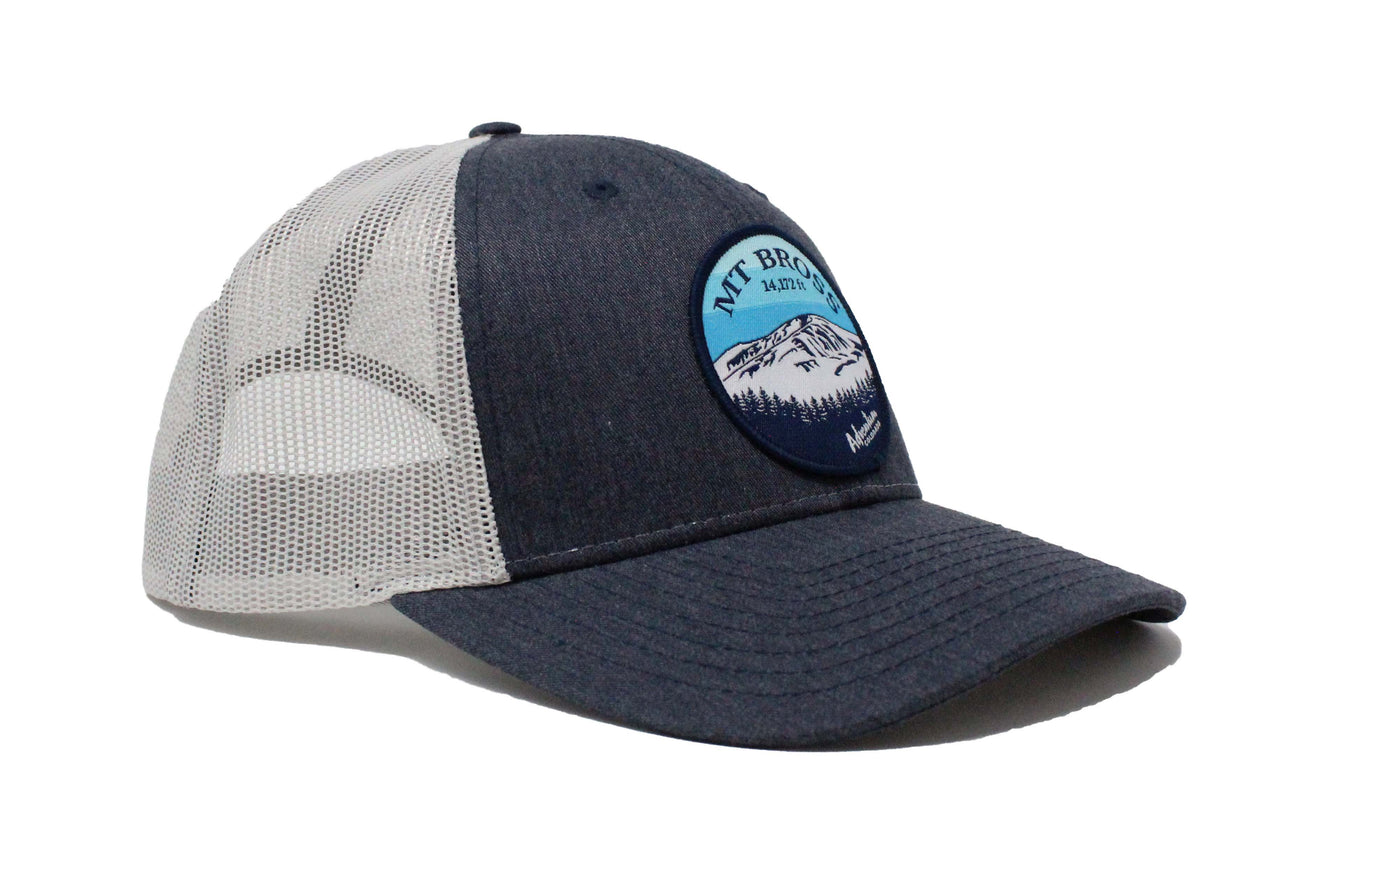 Mt. Bross Trucker Hat